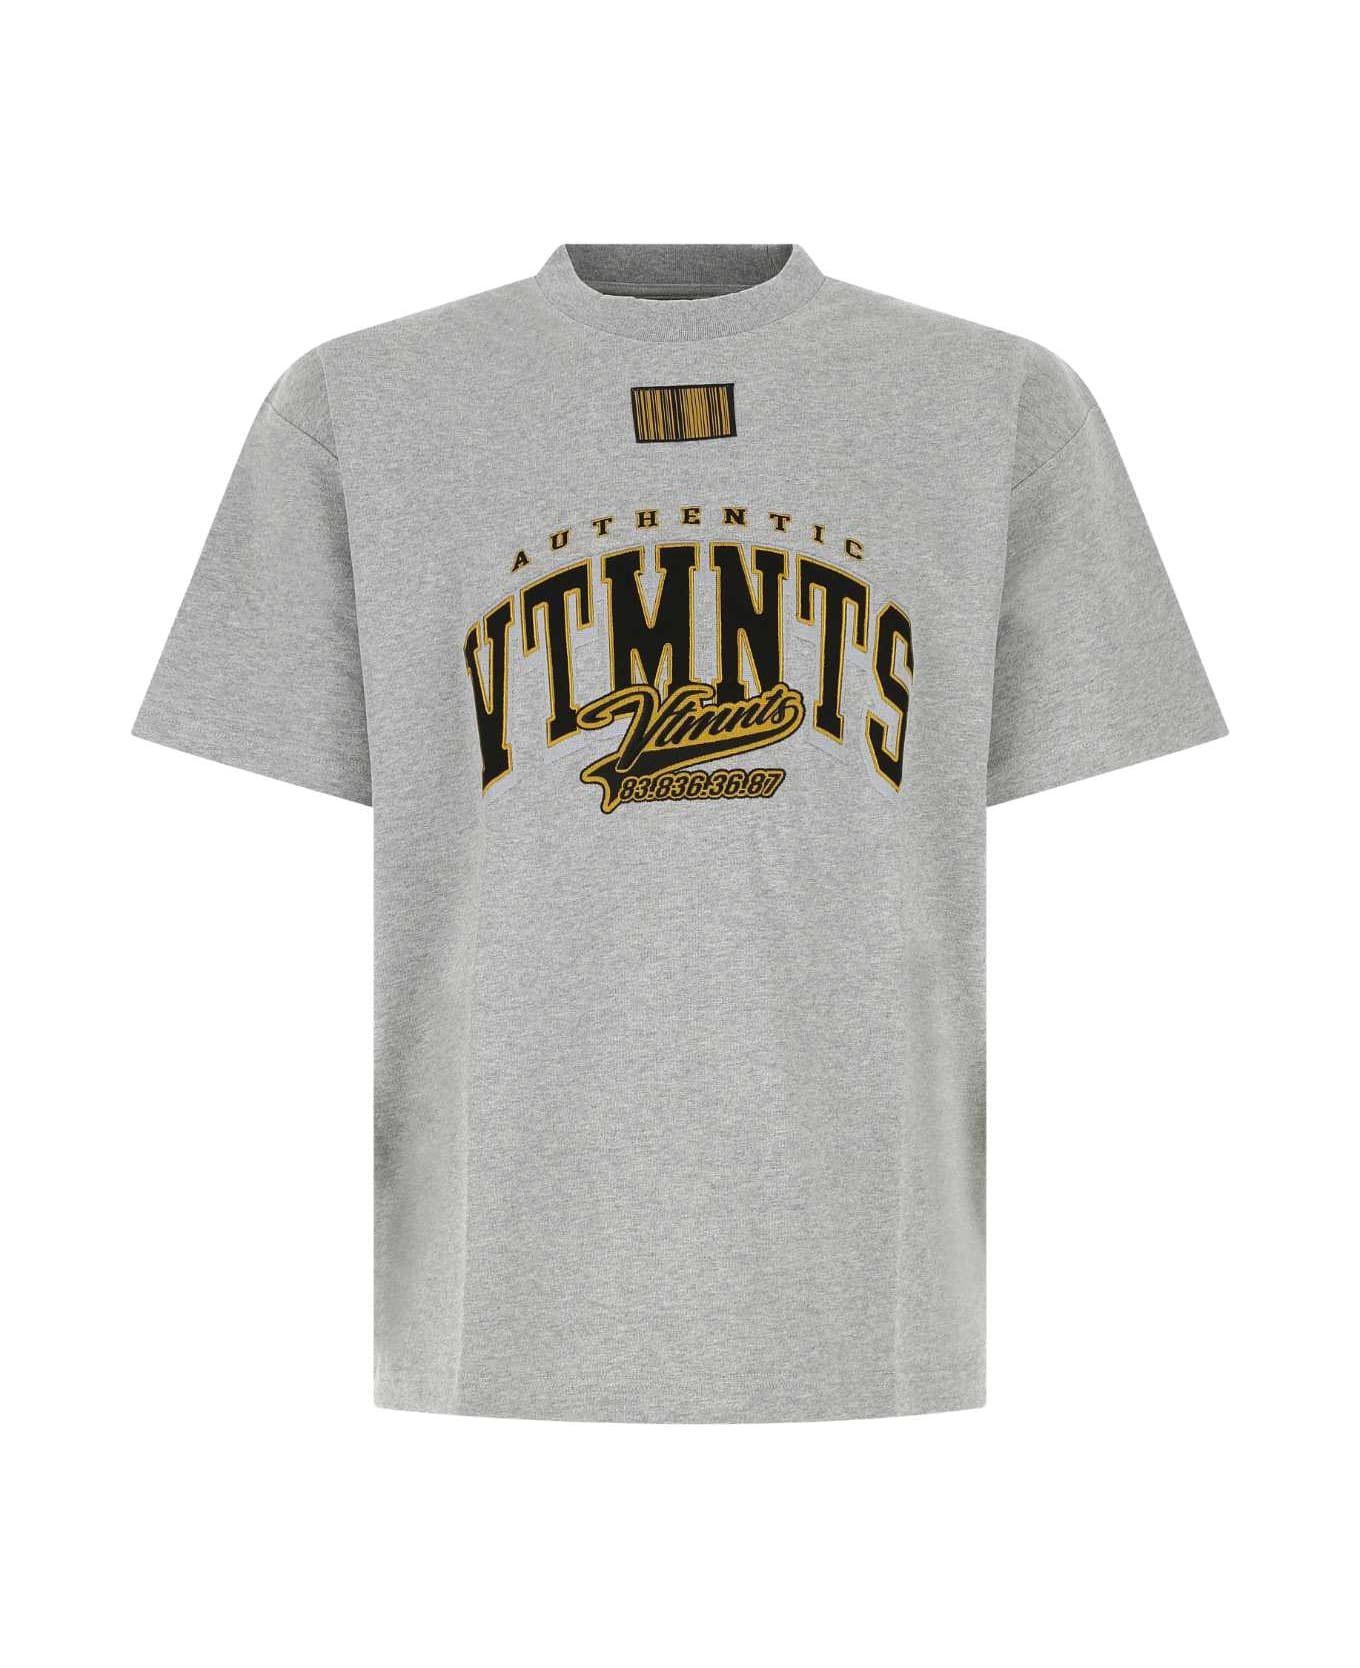 VTMNTS Melange Grey Cotton T-shirt - GREYMELANGE